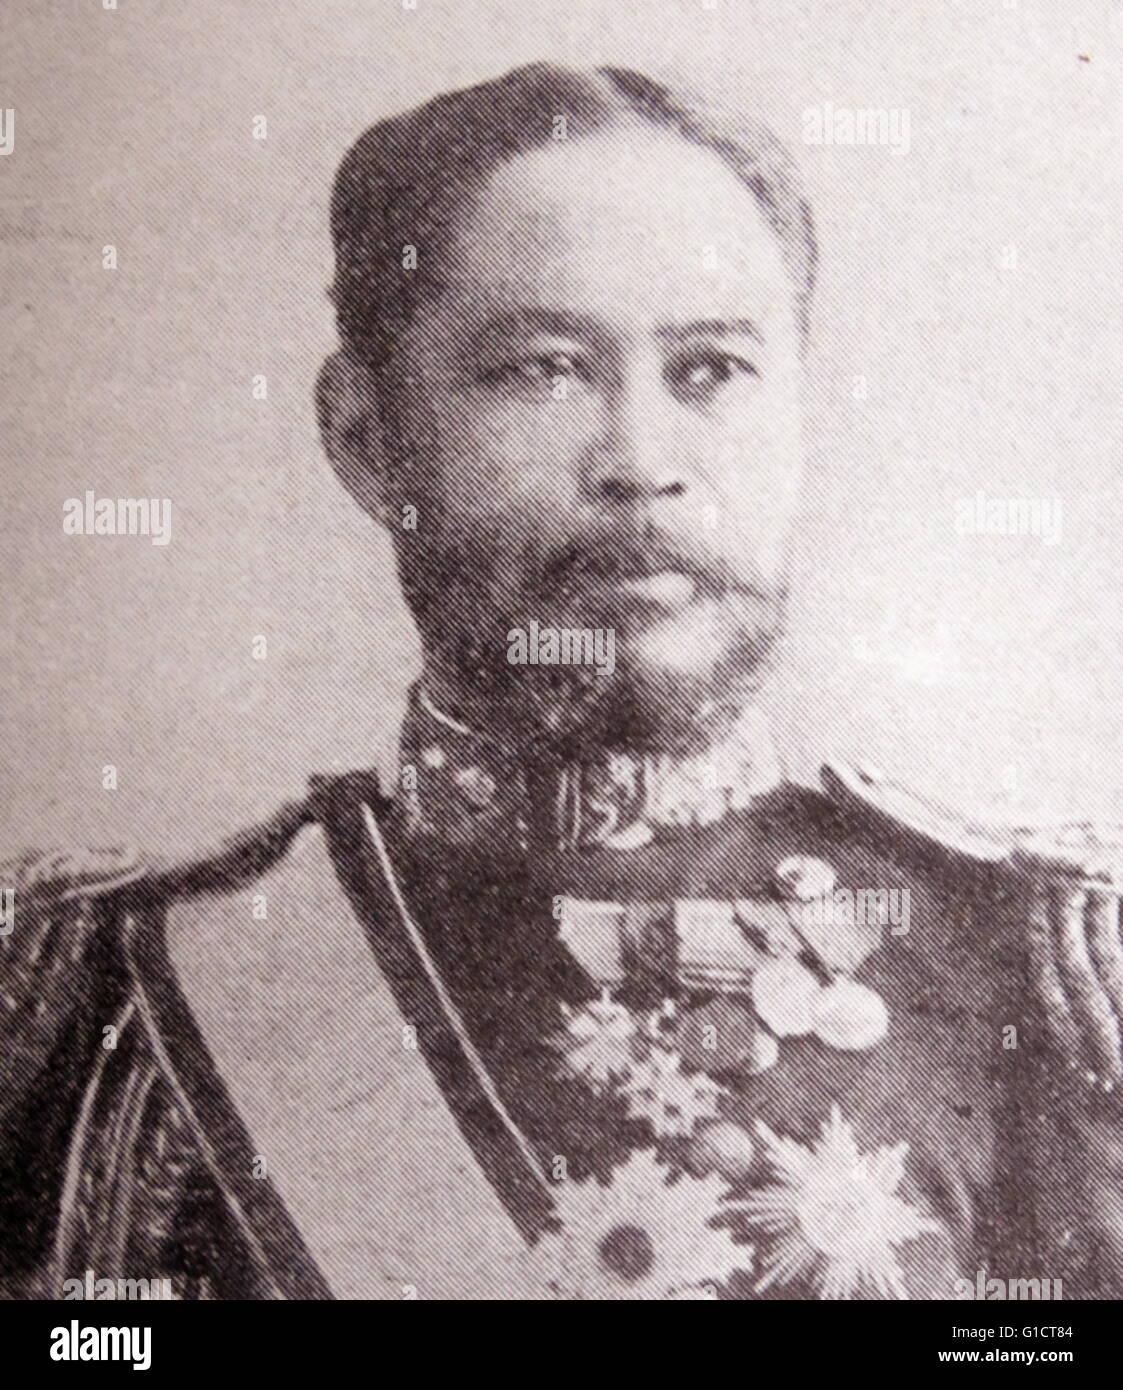 Fotografisches Porträt von Yamamoto Gonnohy? e (1852-1933) Admiral in der kaiserlichen japanischen Marine und Premierminister von Japan. Vom 19. Jahrhundert Stockfoto